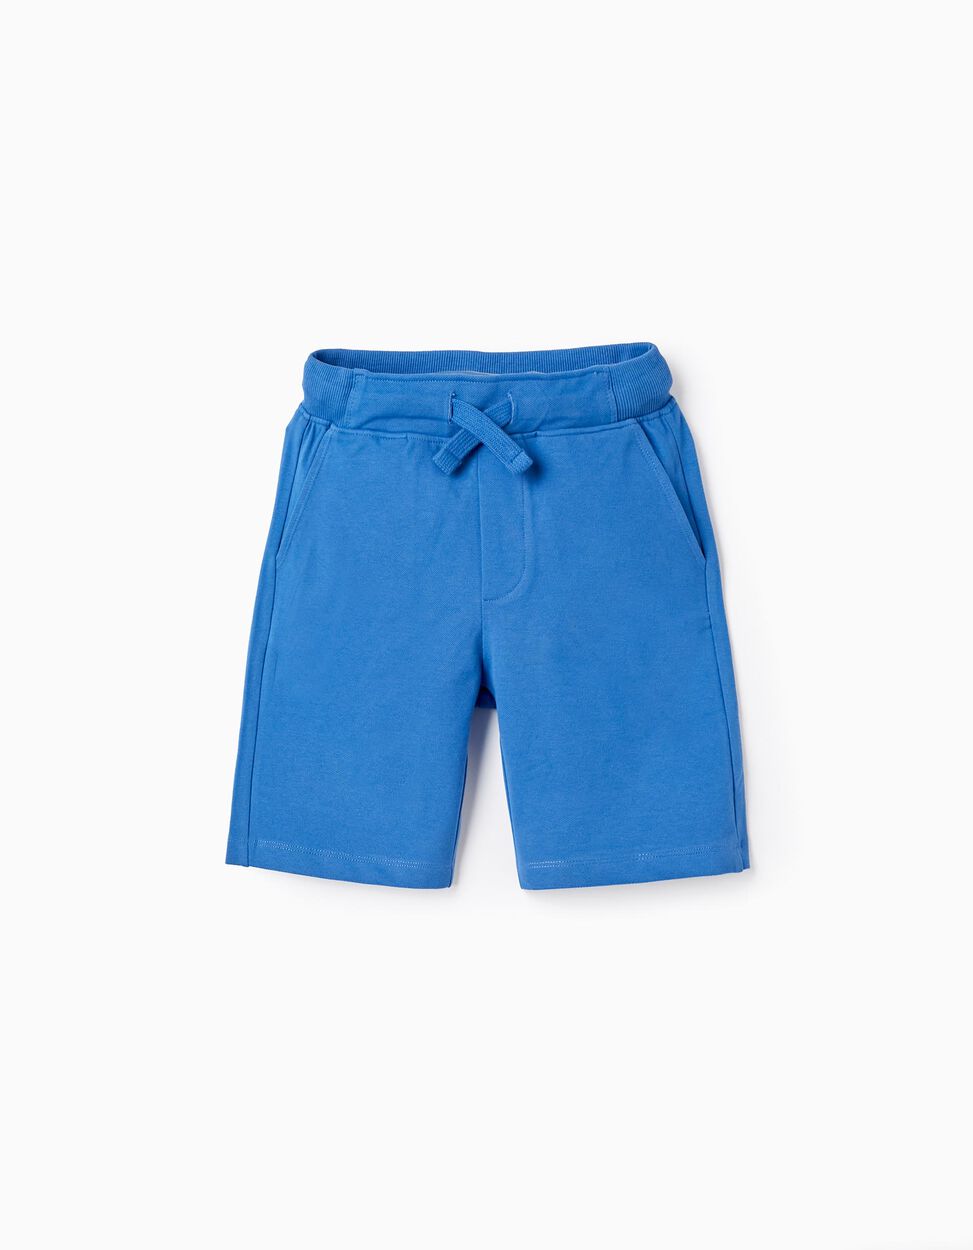 Comprar Online Shorts de Piqué de Algodón para Niño, Azul